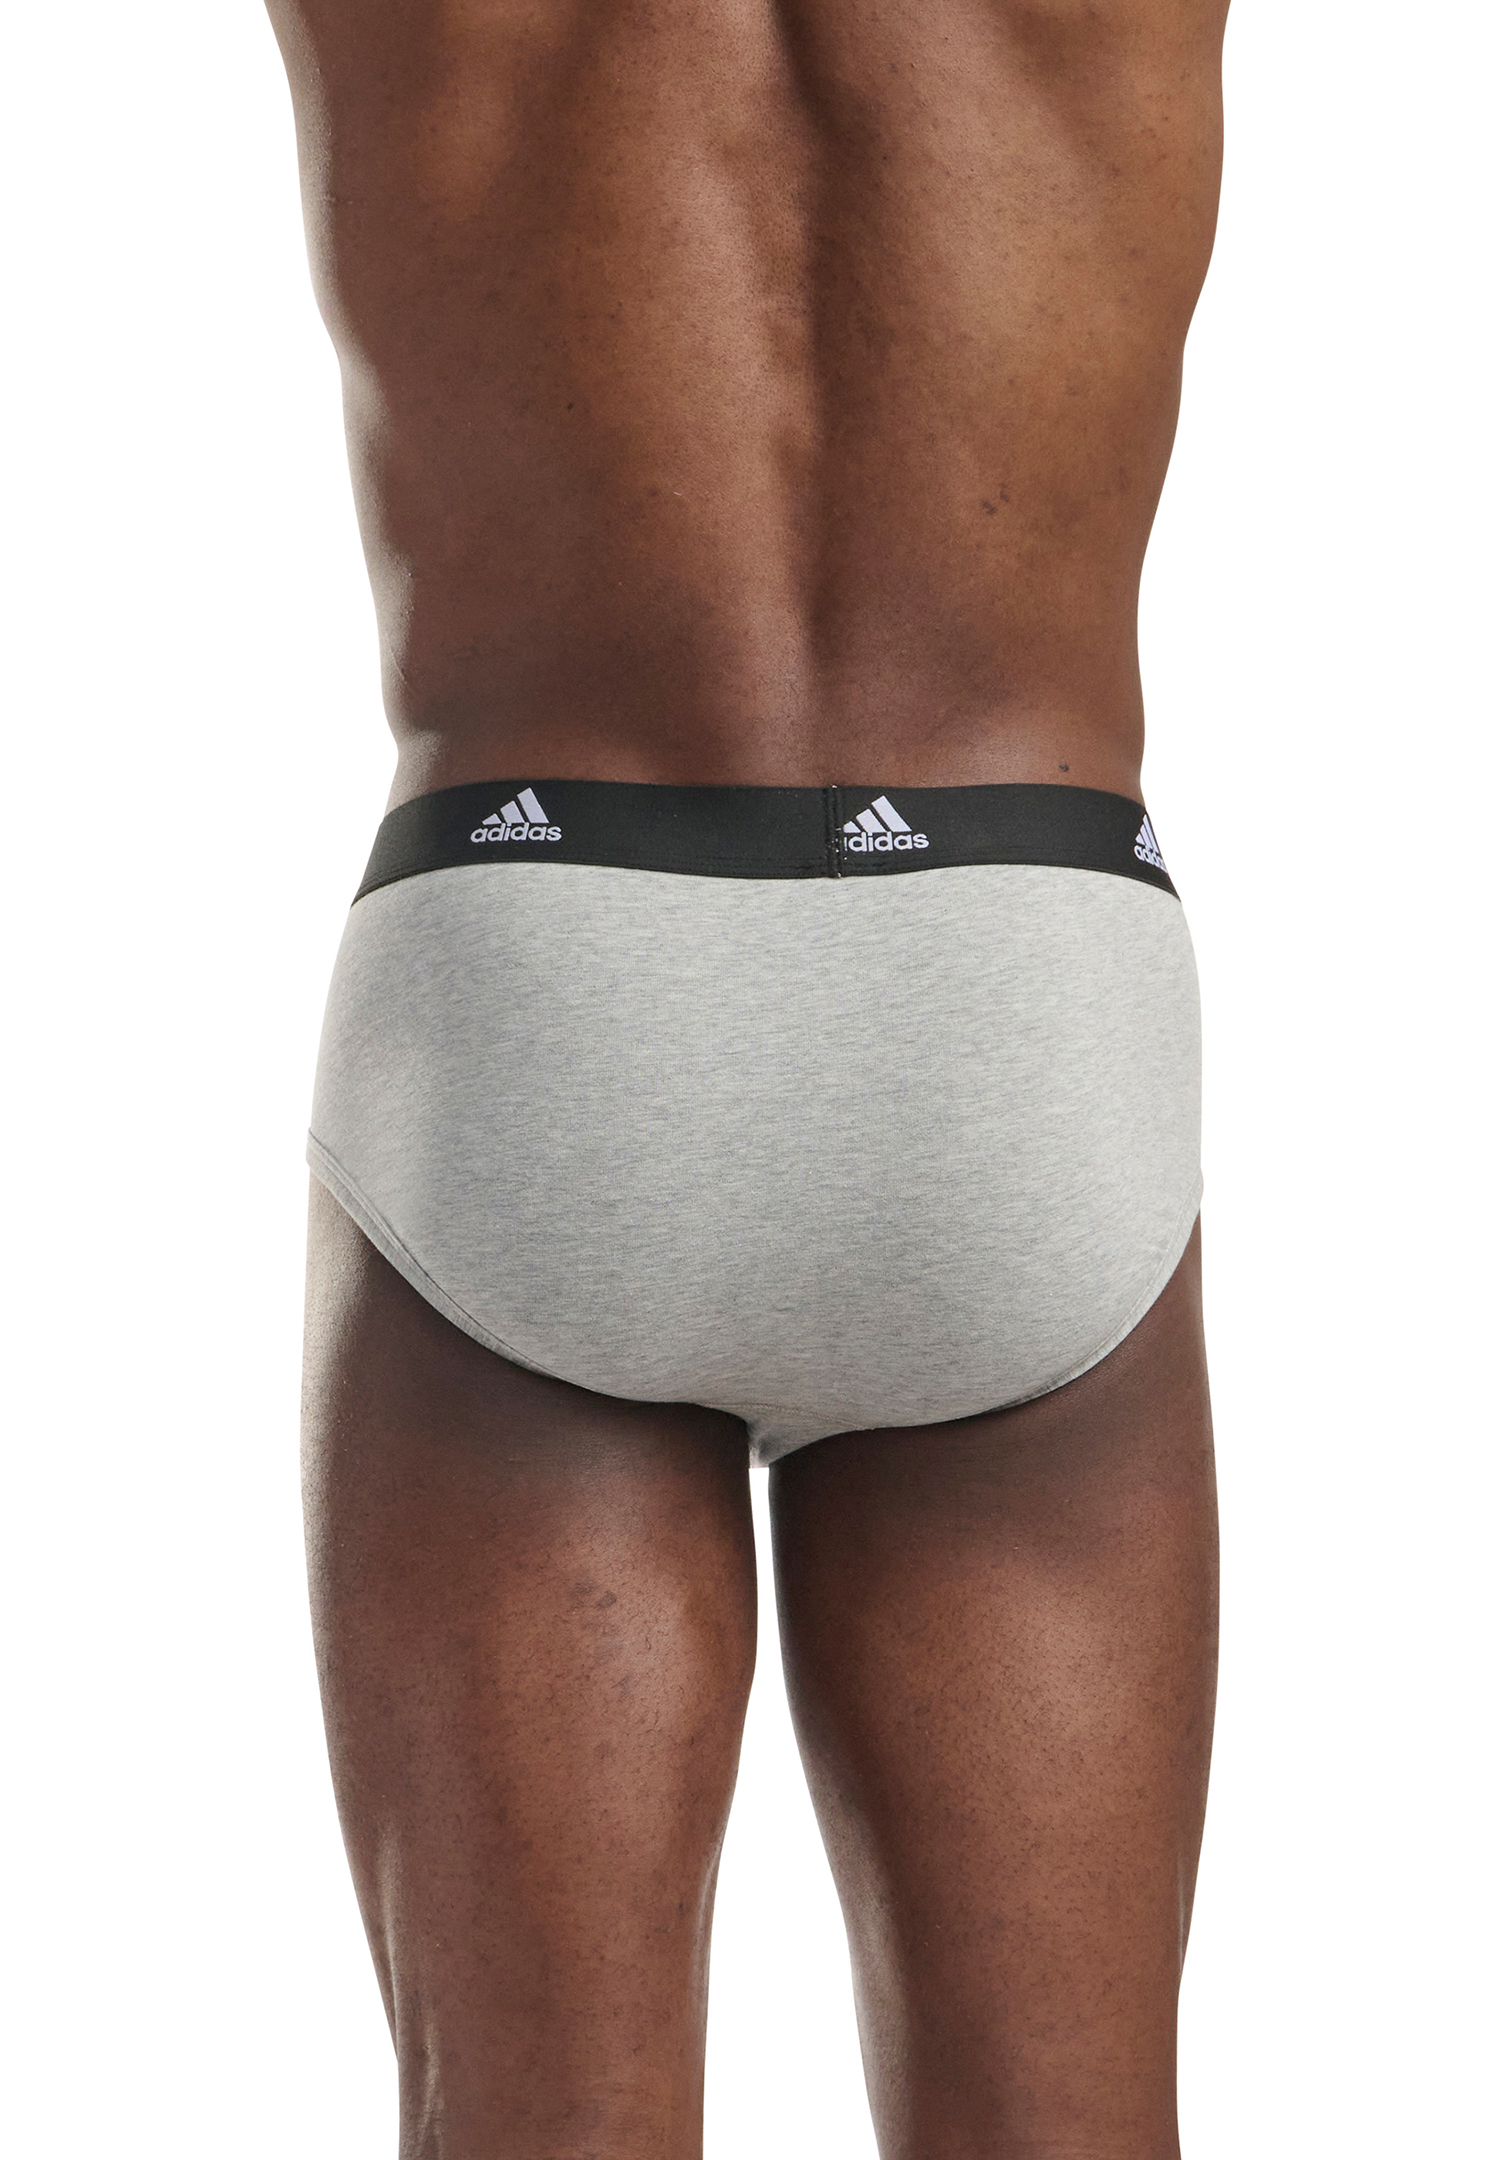 Adidas Herren Basic Brief Slips Unterhose Pant Unterwäsche 3er Pack 